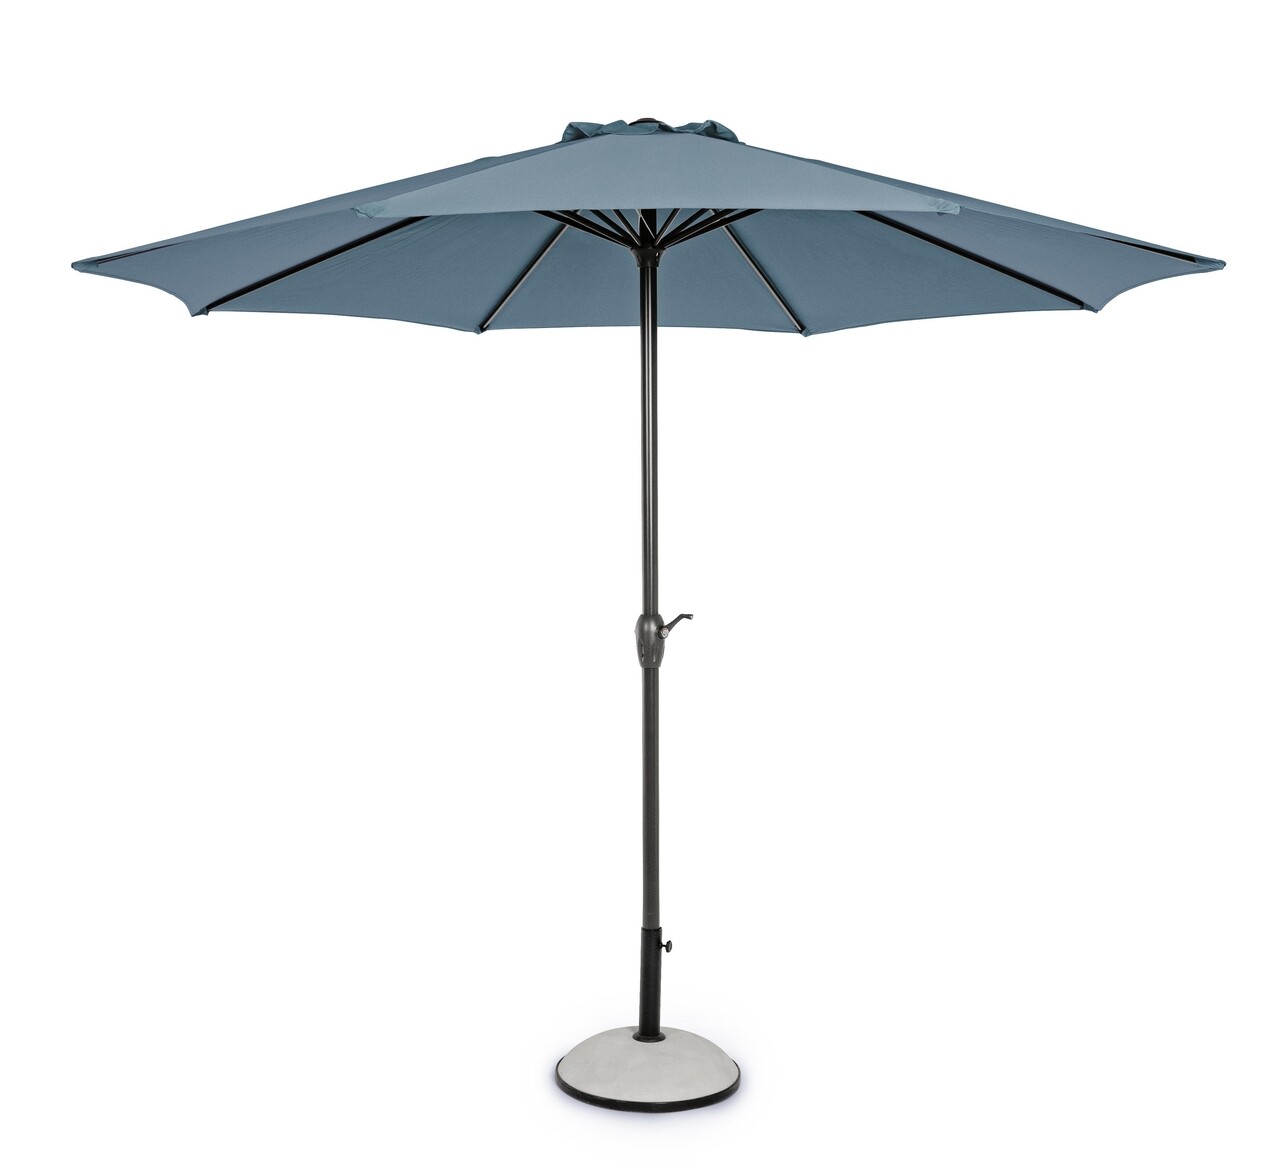 Kalife Terasz/kerti napernyő, Bizzotto, Ø300 cm, stalp Ø46/48 mm, alumínium/poliészter, kék